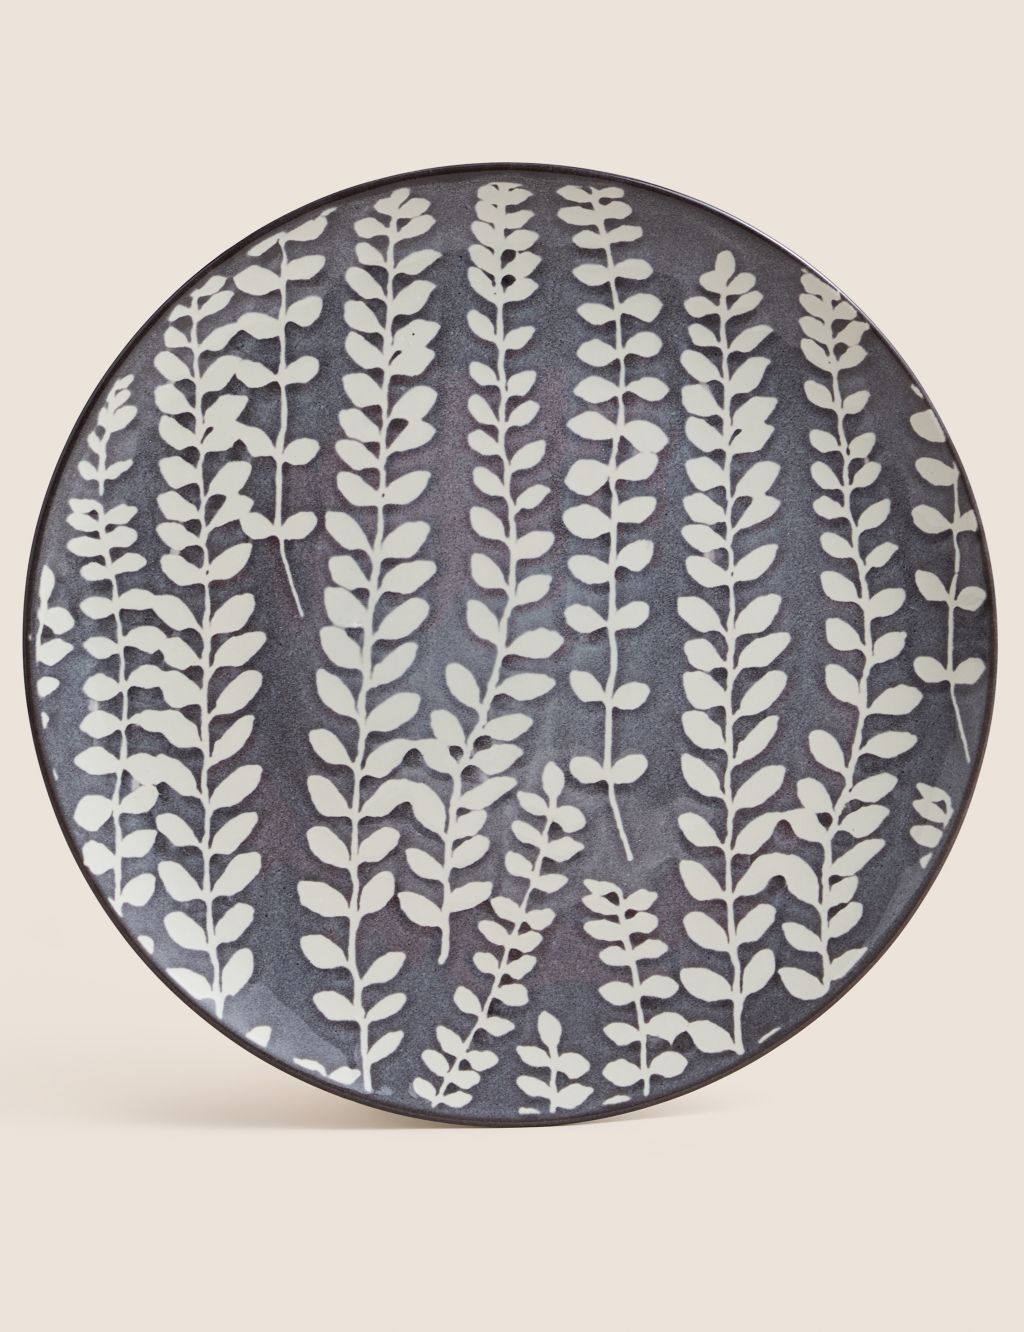 Floral Glazed Stoneware Serving Platter